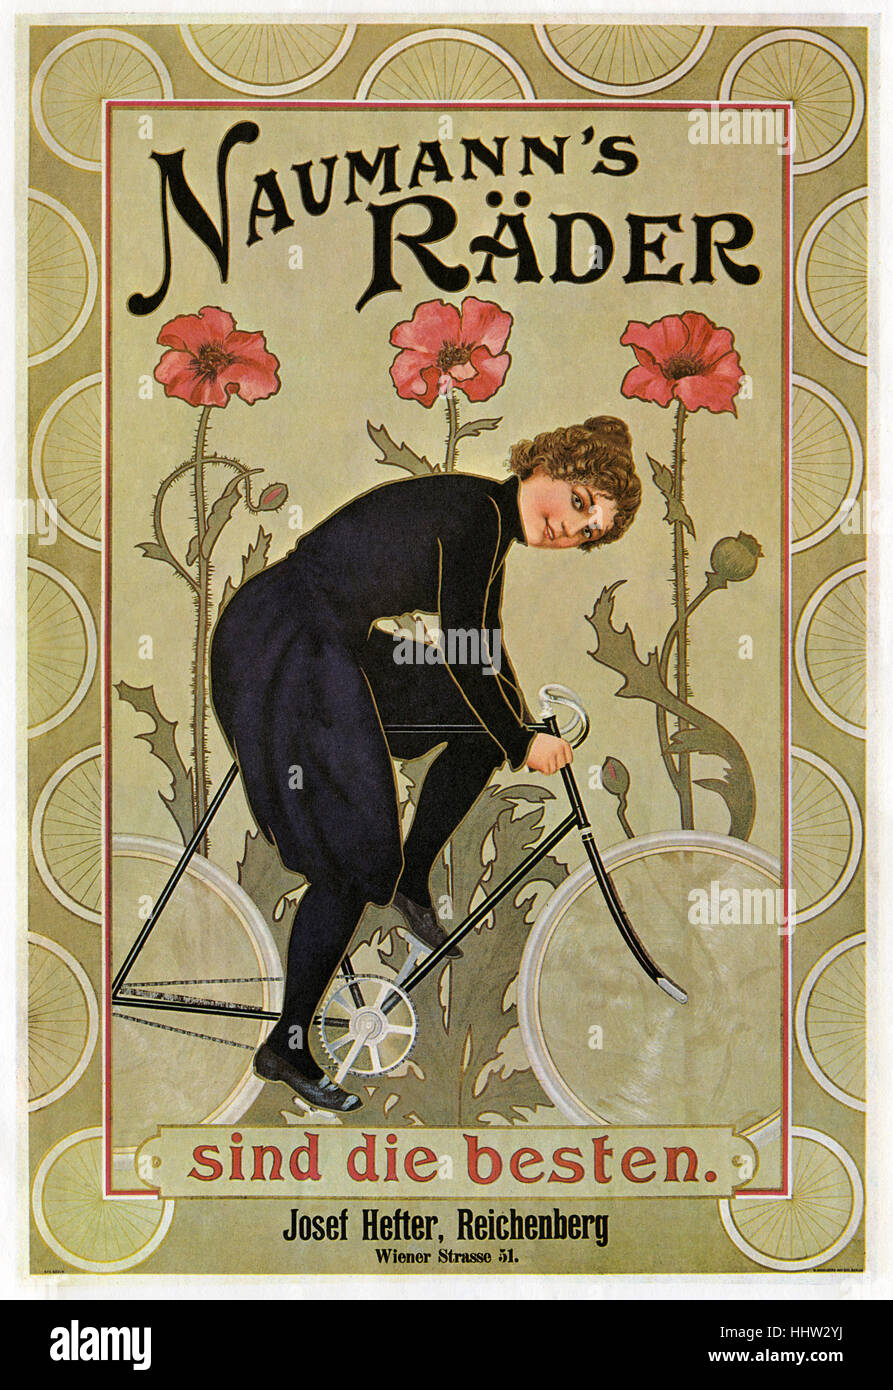 Naumann´s Räder sind die besten. Josef Hefter, Reichenberg, Wiener Strasse 51. Bicycle advertisement. Woman cycling. C.1905 Stock Photo